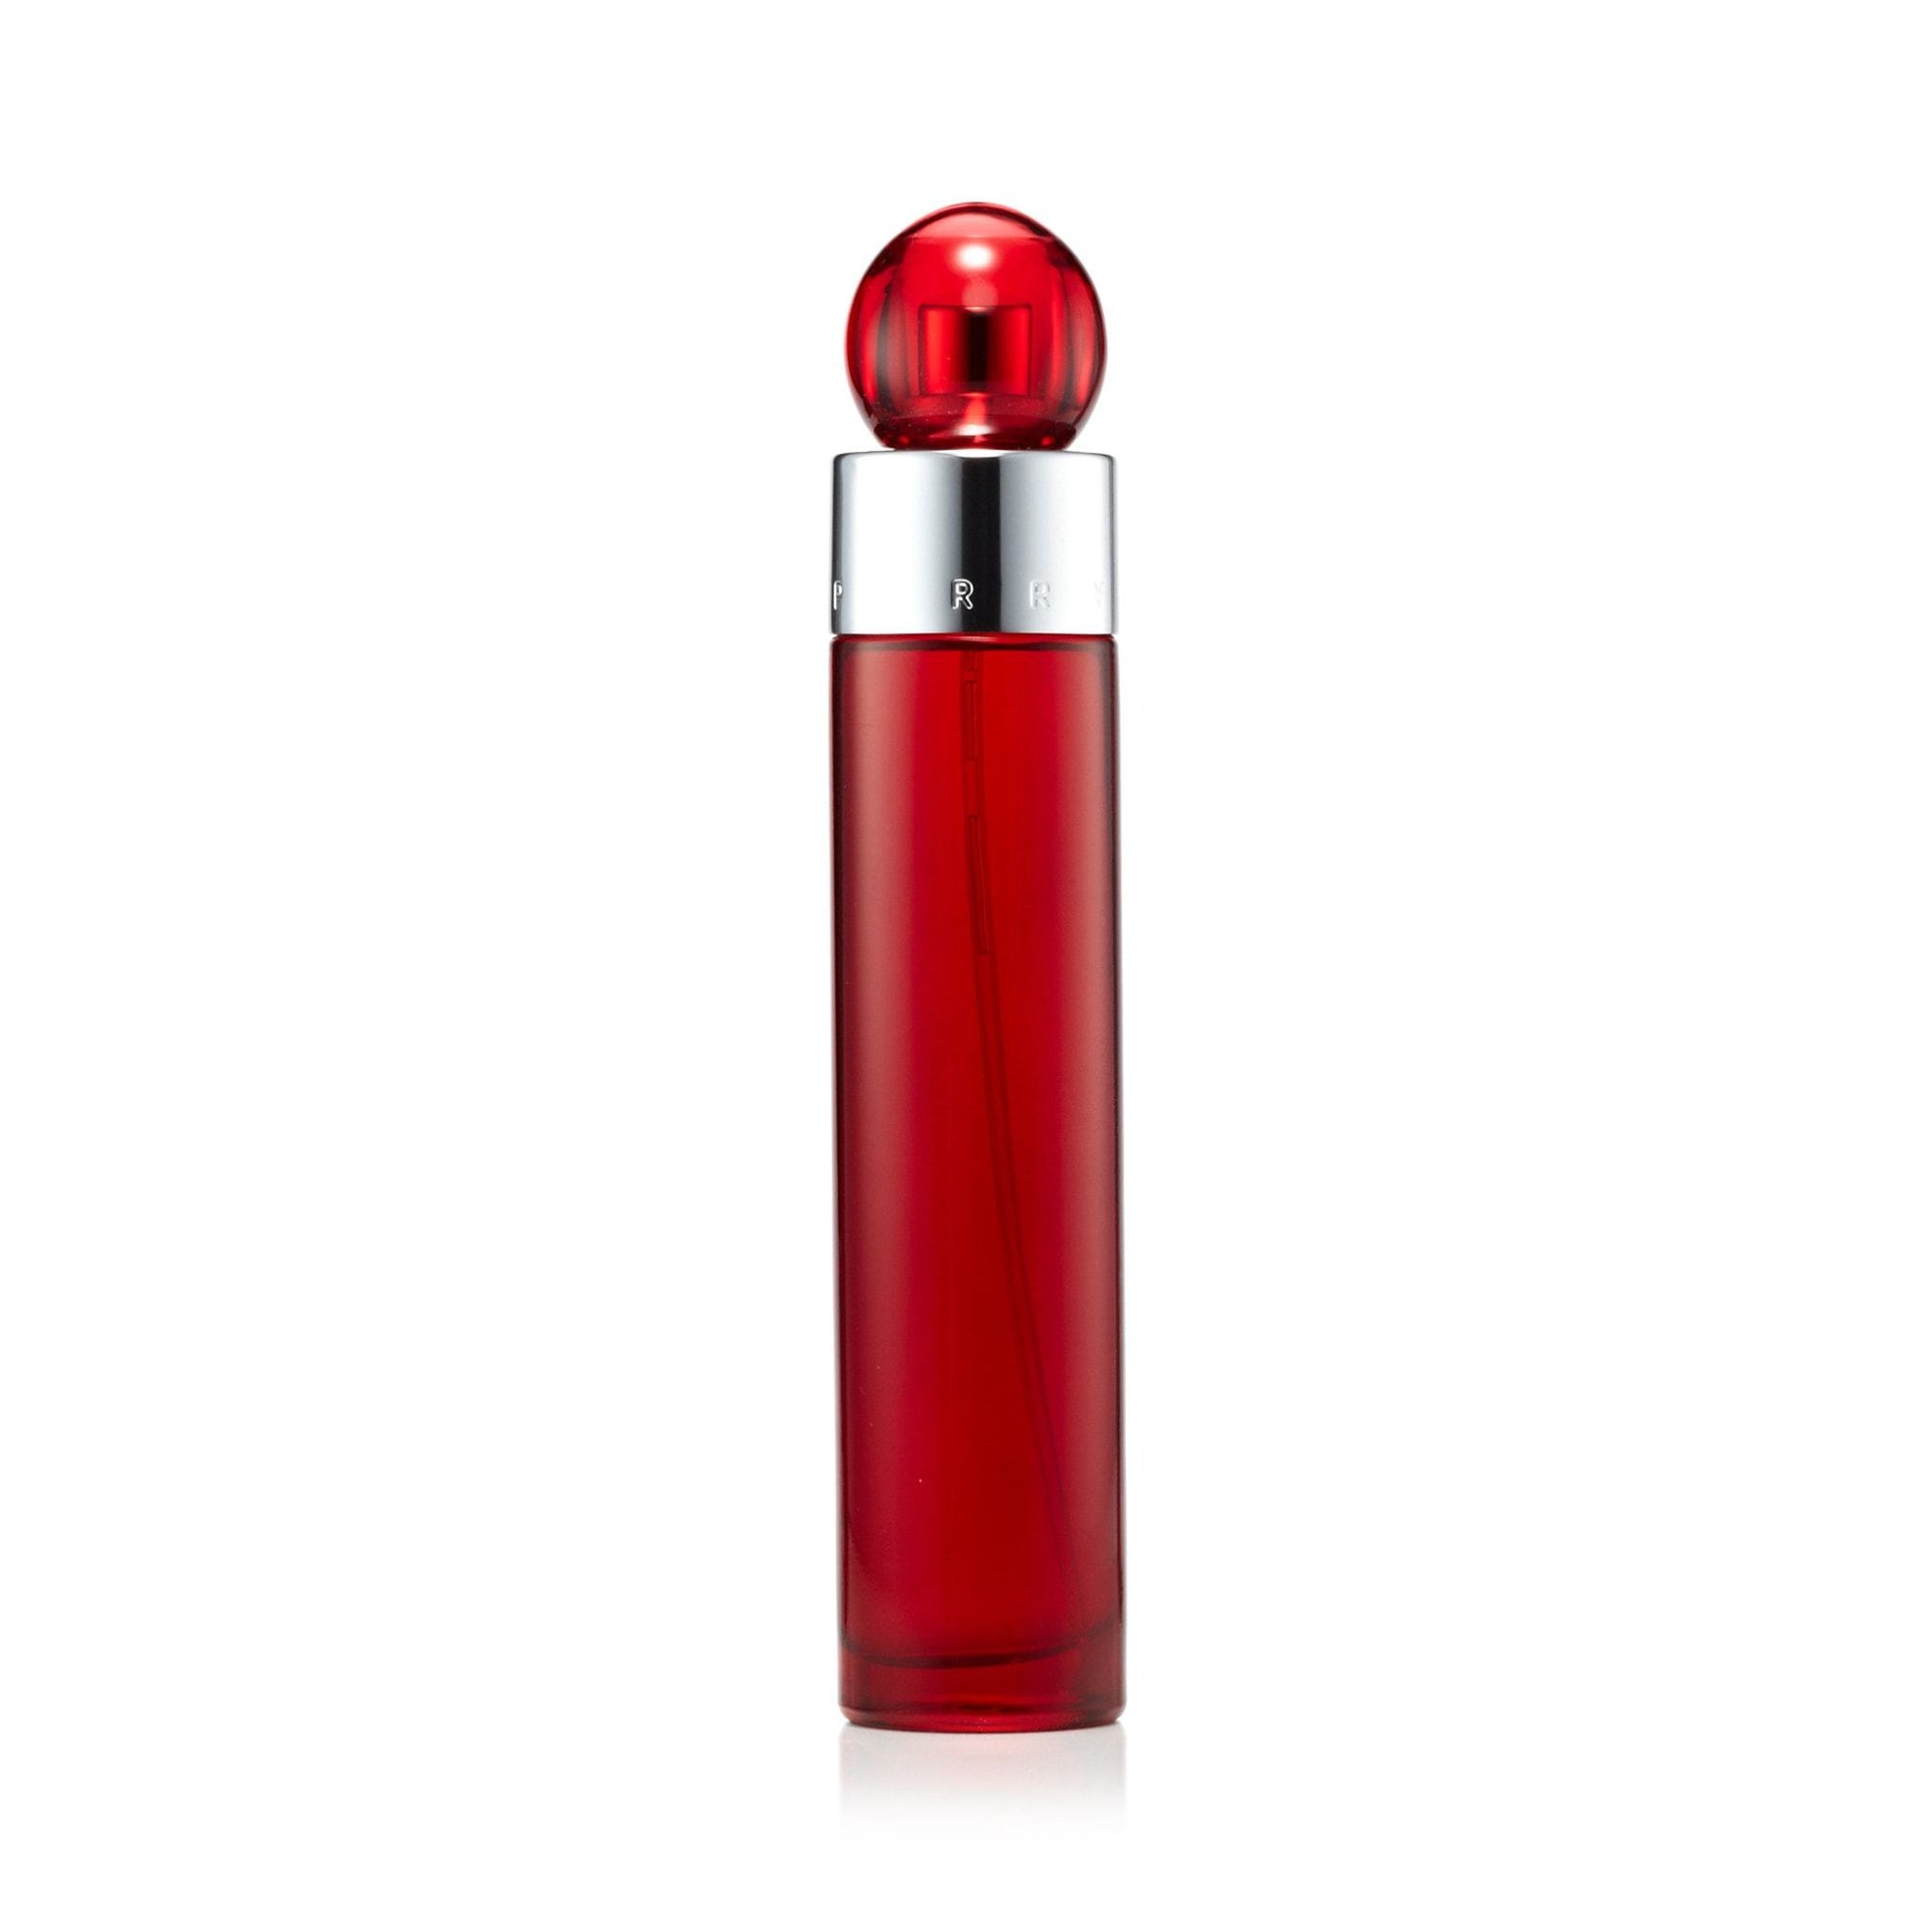 360° Red Eau de Toilette Spray for Men by Perry Ellis, Product image 3